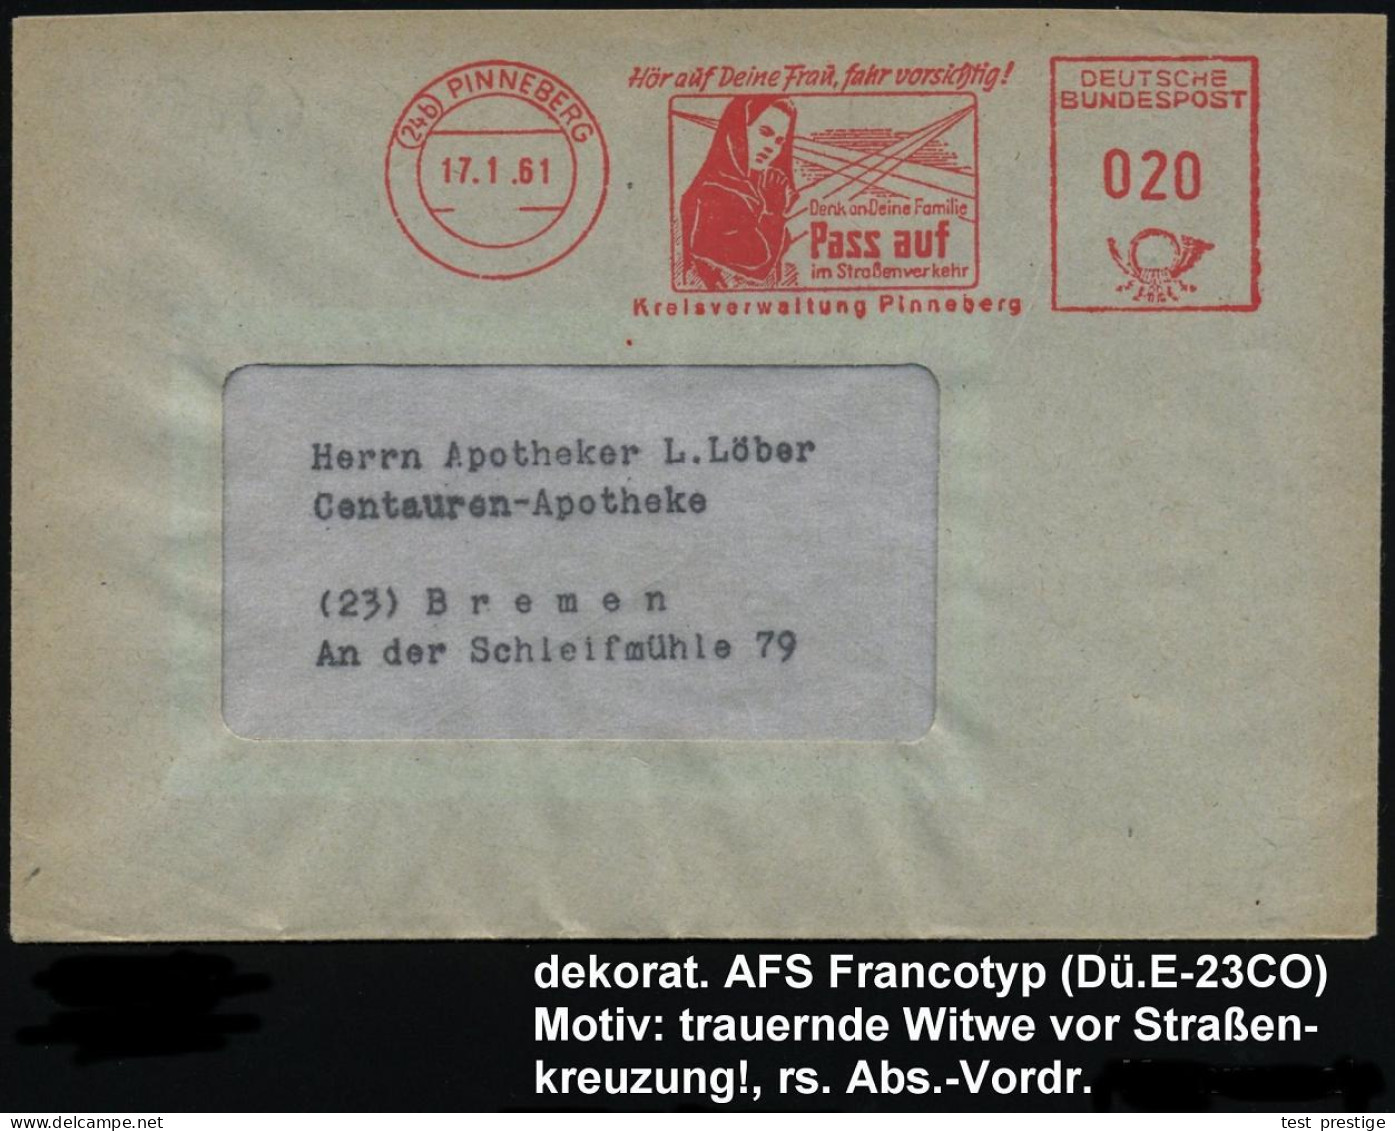 (24b) PINNEBERG/ Hör Auf Deine Frau,fahr Vorsichtig!../ Pass Auf/ Im Strassenverkehr/ Kreisverwaltung 1961 (17.1.) Selte - Ongevallen & Veiligheid Op De Weg